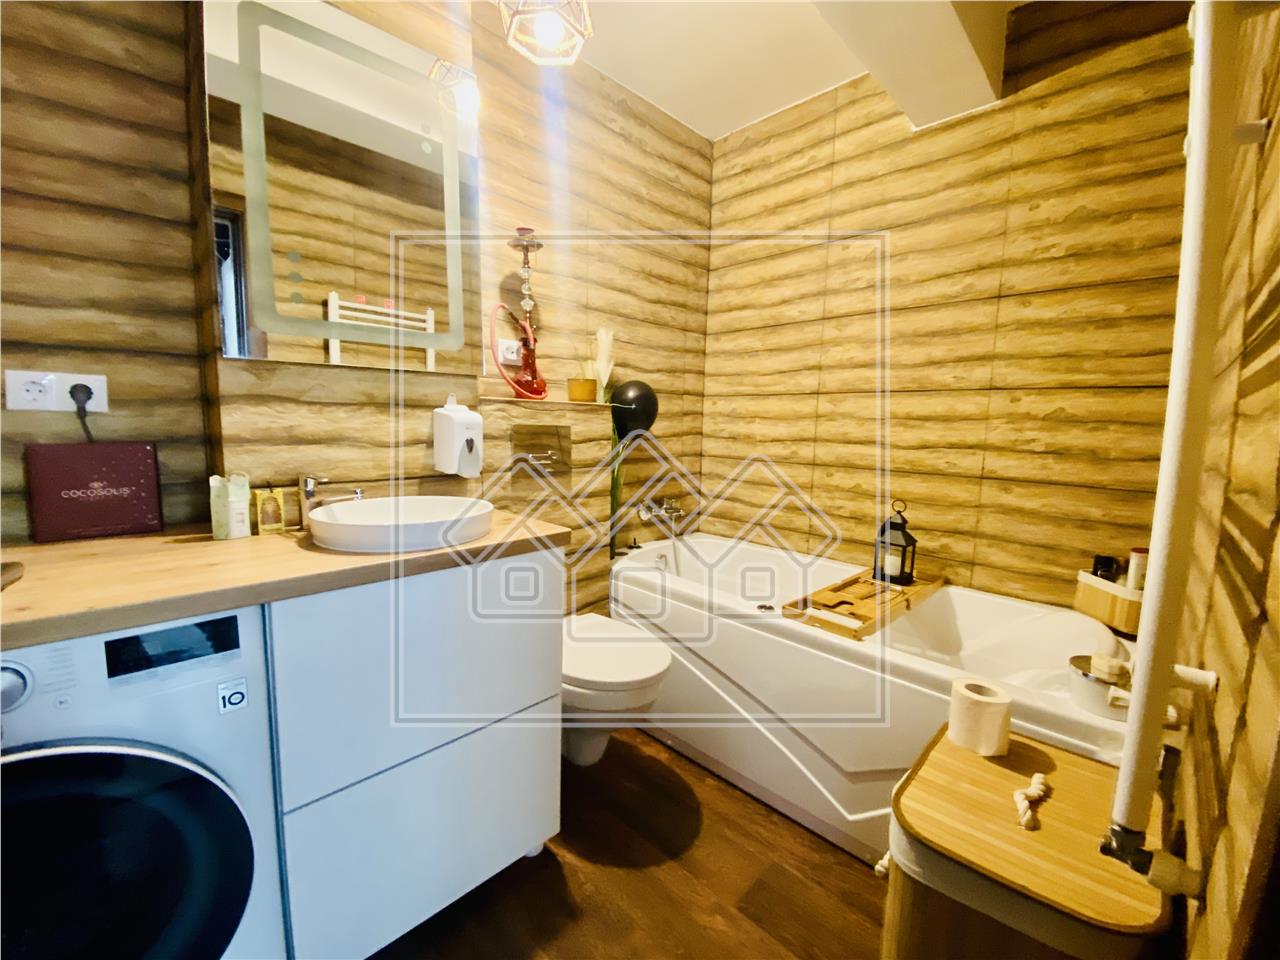 2 Zimmer Wohnung kaufen in Sibiu -luxuri?s eingerichtet und ausgestatt